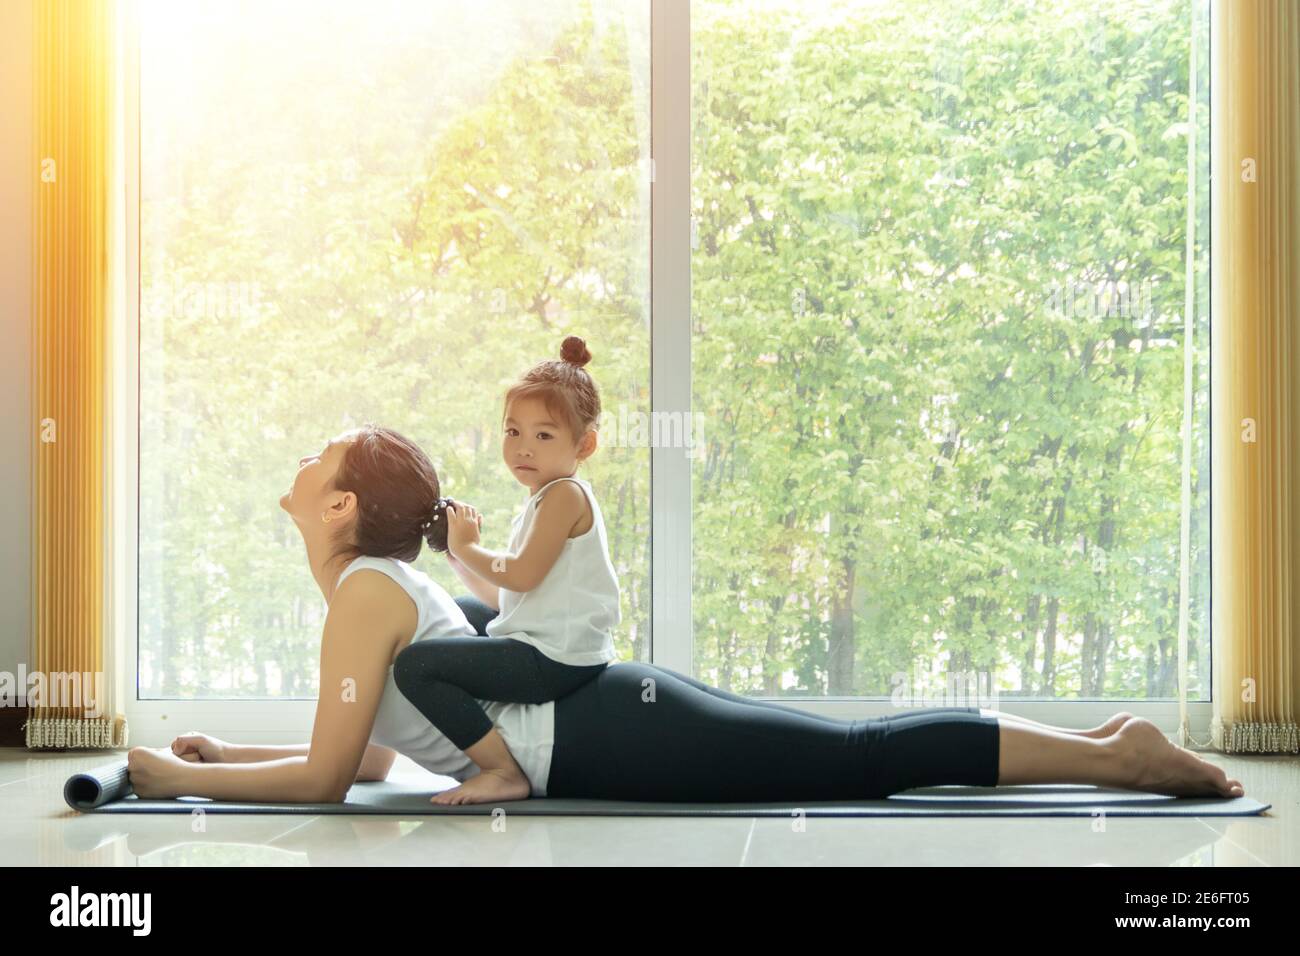 Une maman asiatique pratique la pose de yoga Cobra, entraînez-vous à la maison avec une adorable fille assise sur son dos, activité à faire ensemble à la maison en famille Banque D'Images